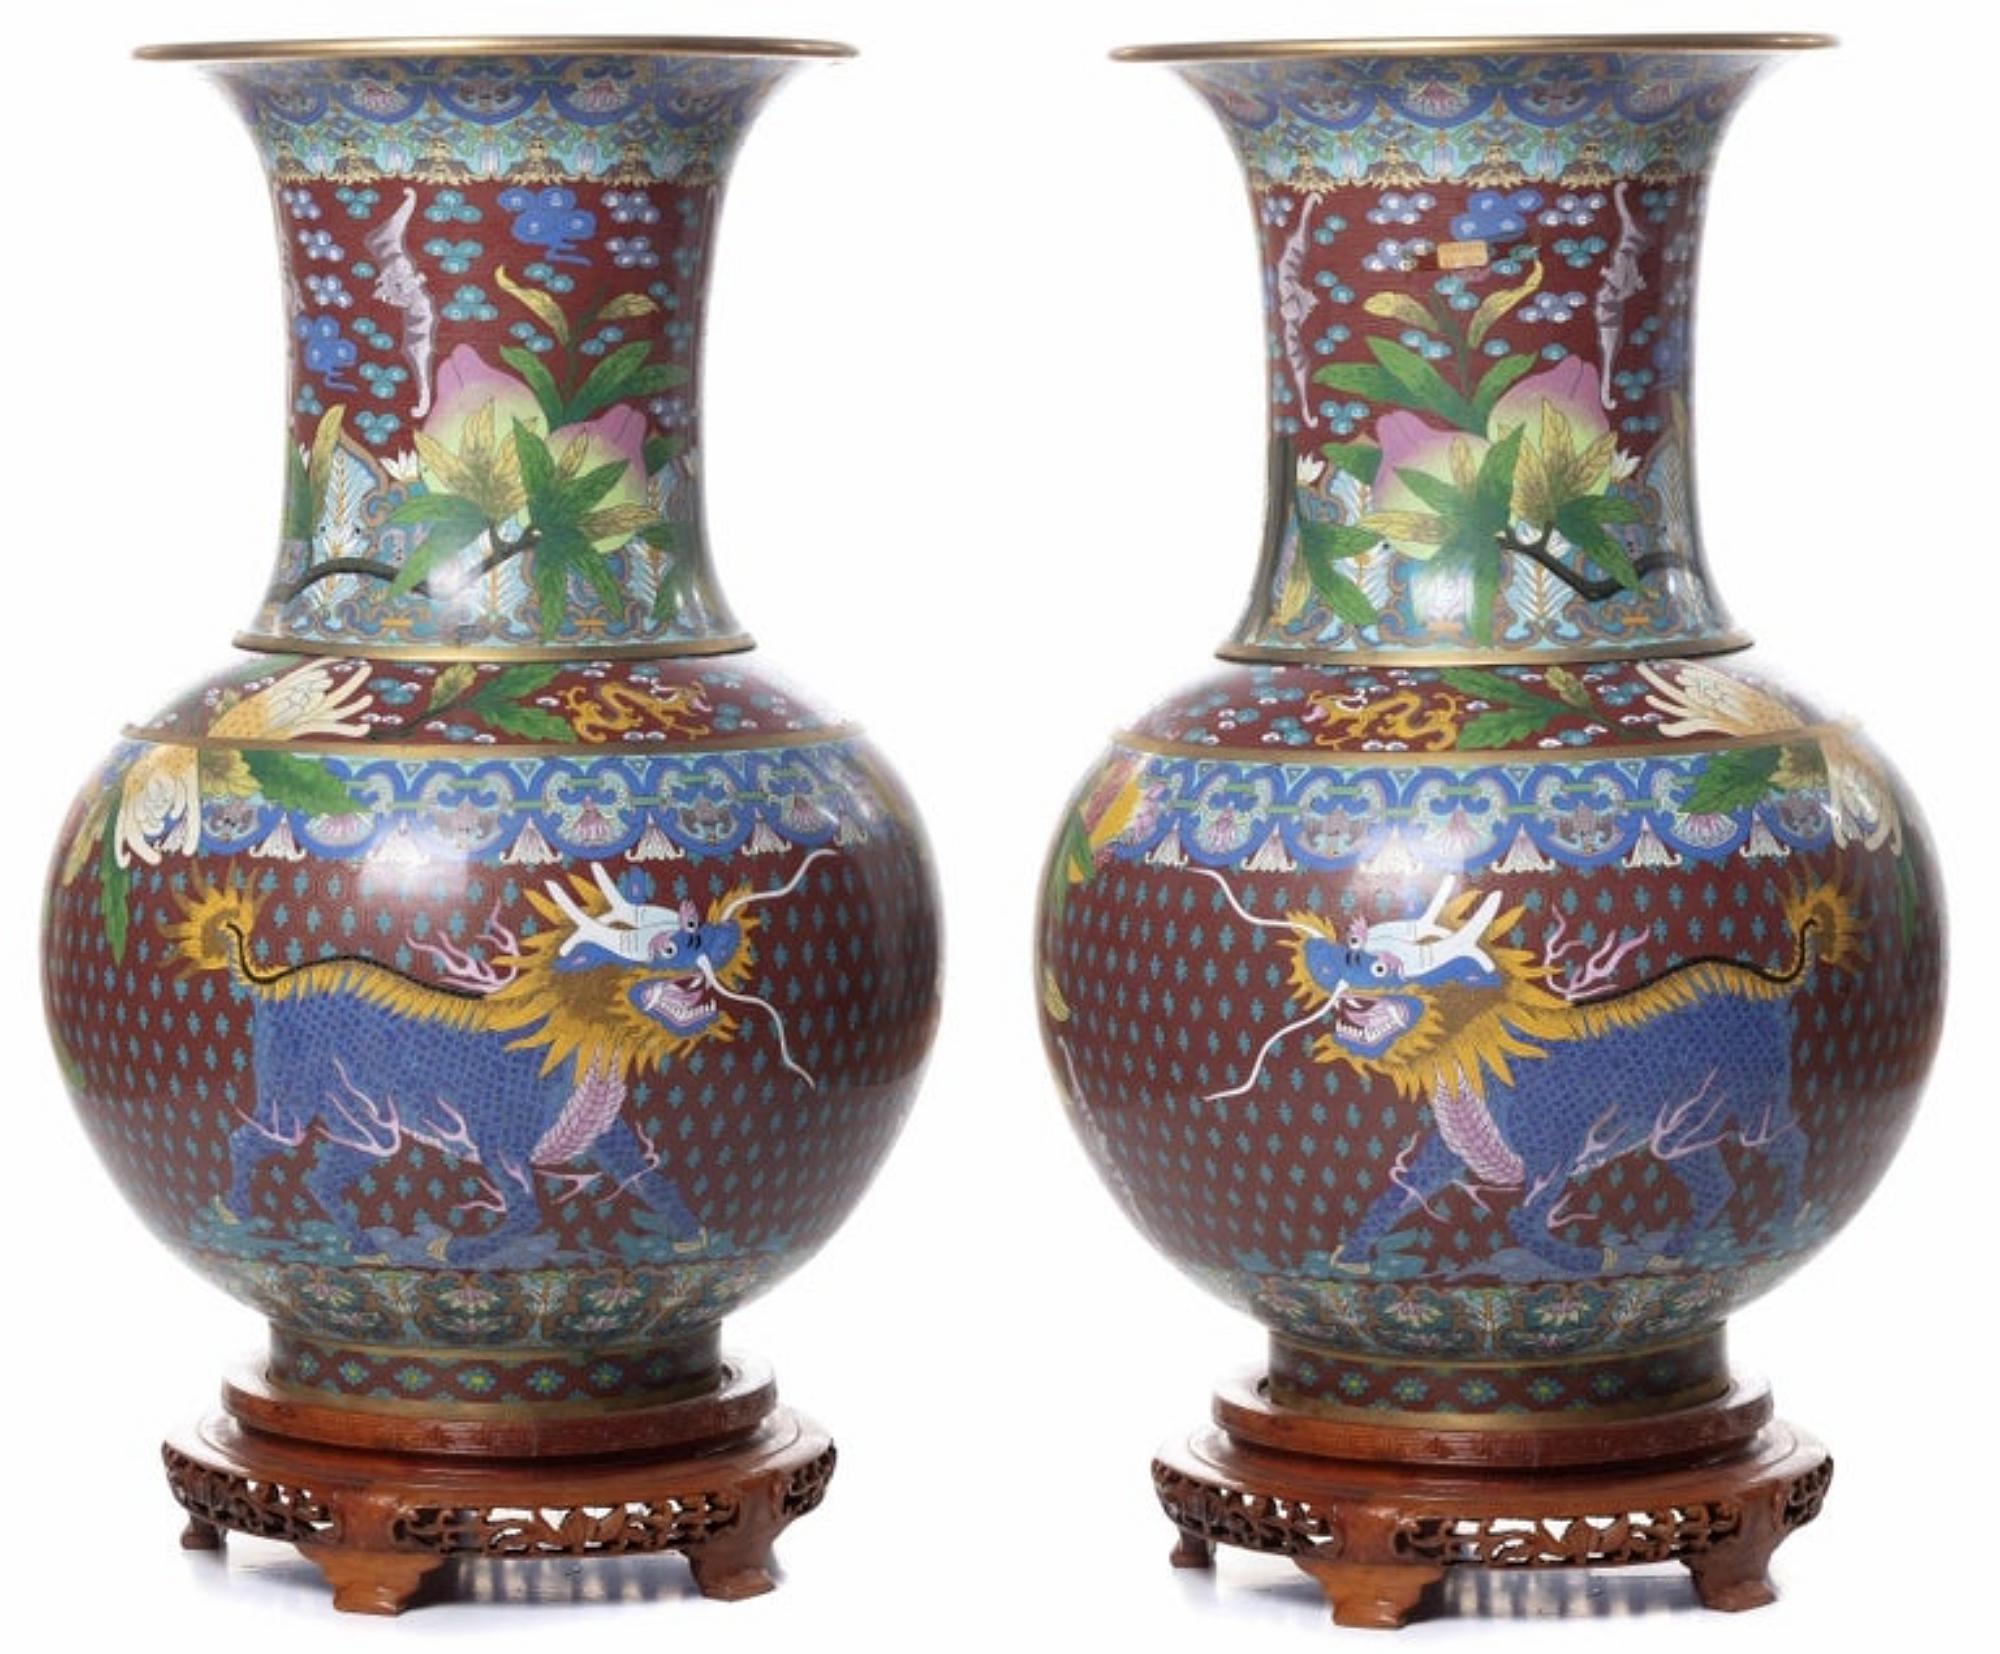 Chinese Export Pair of Jars Chinese Minguo Period '1912-1949'